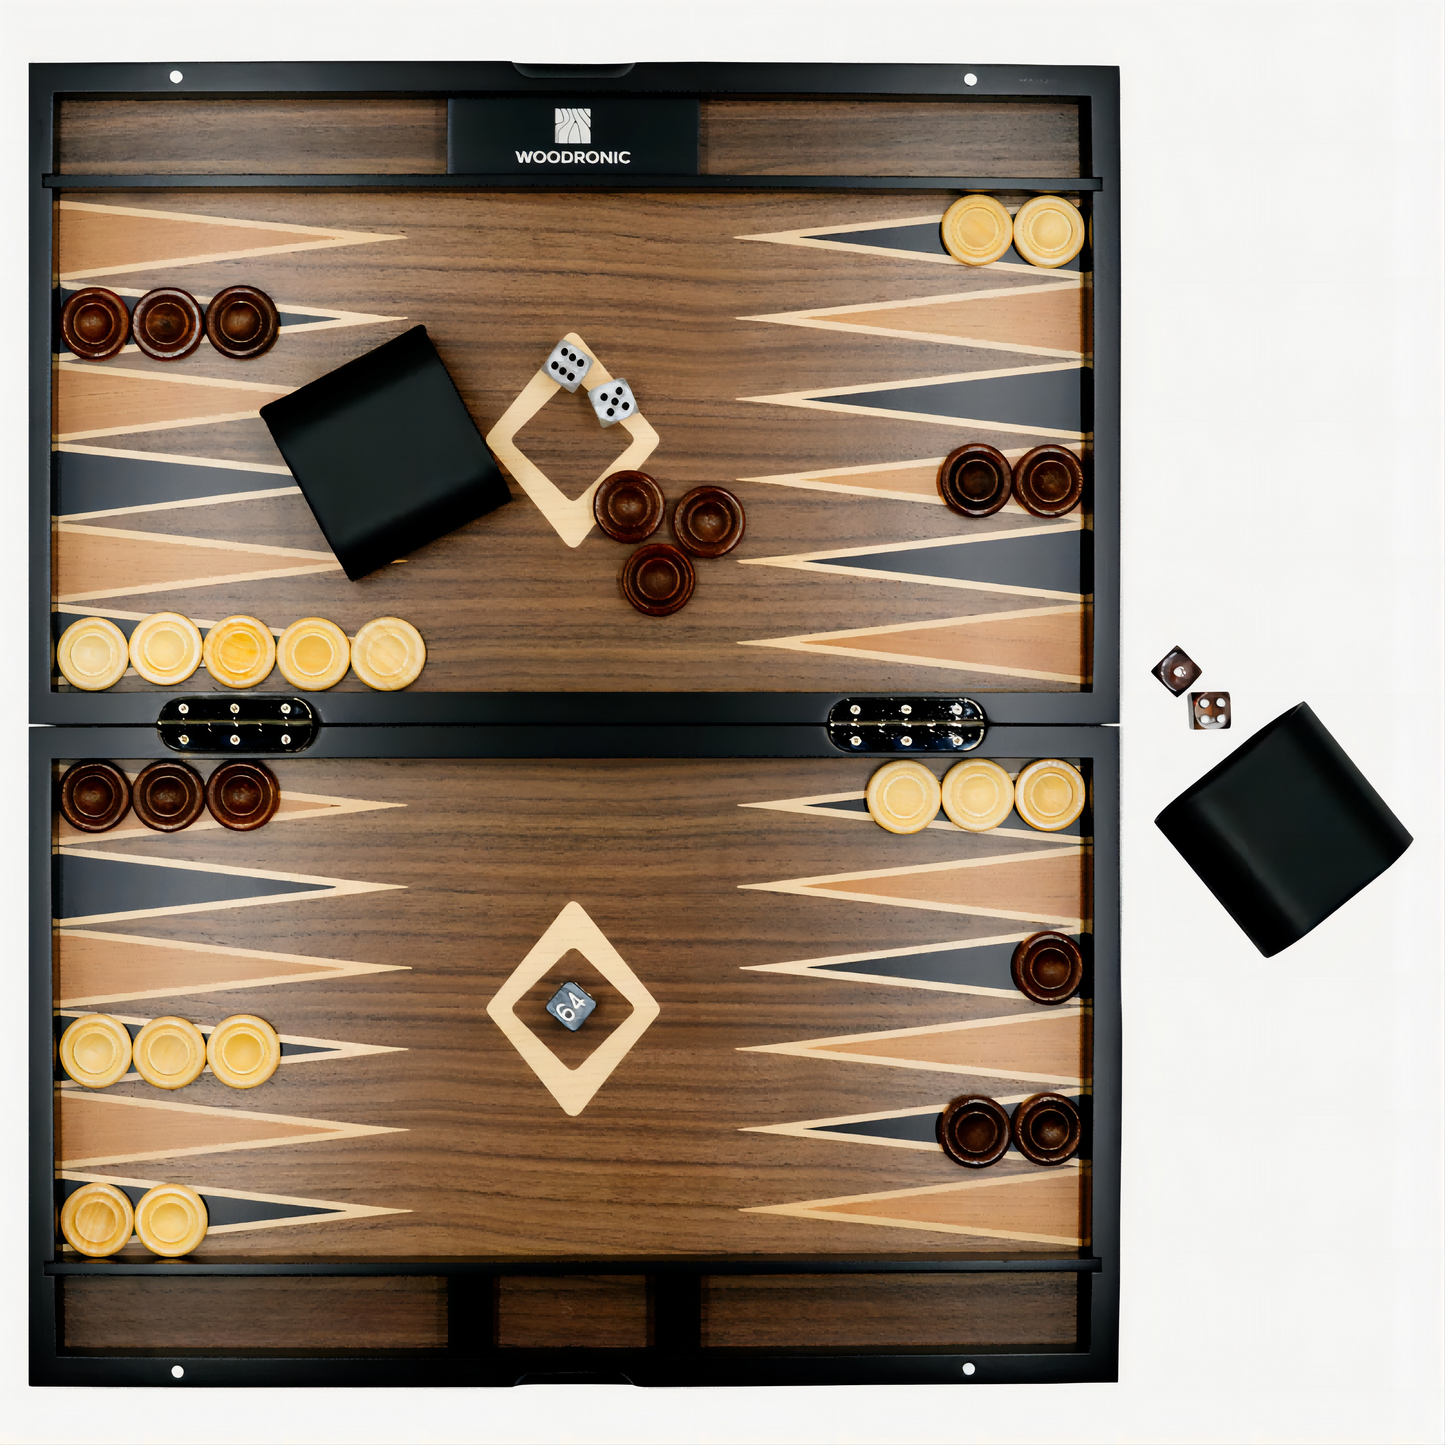 A5040 Backgammon Set, Walnut Maple Mahogany Veneers